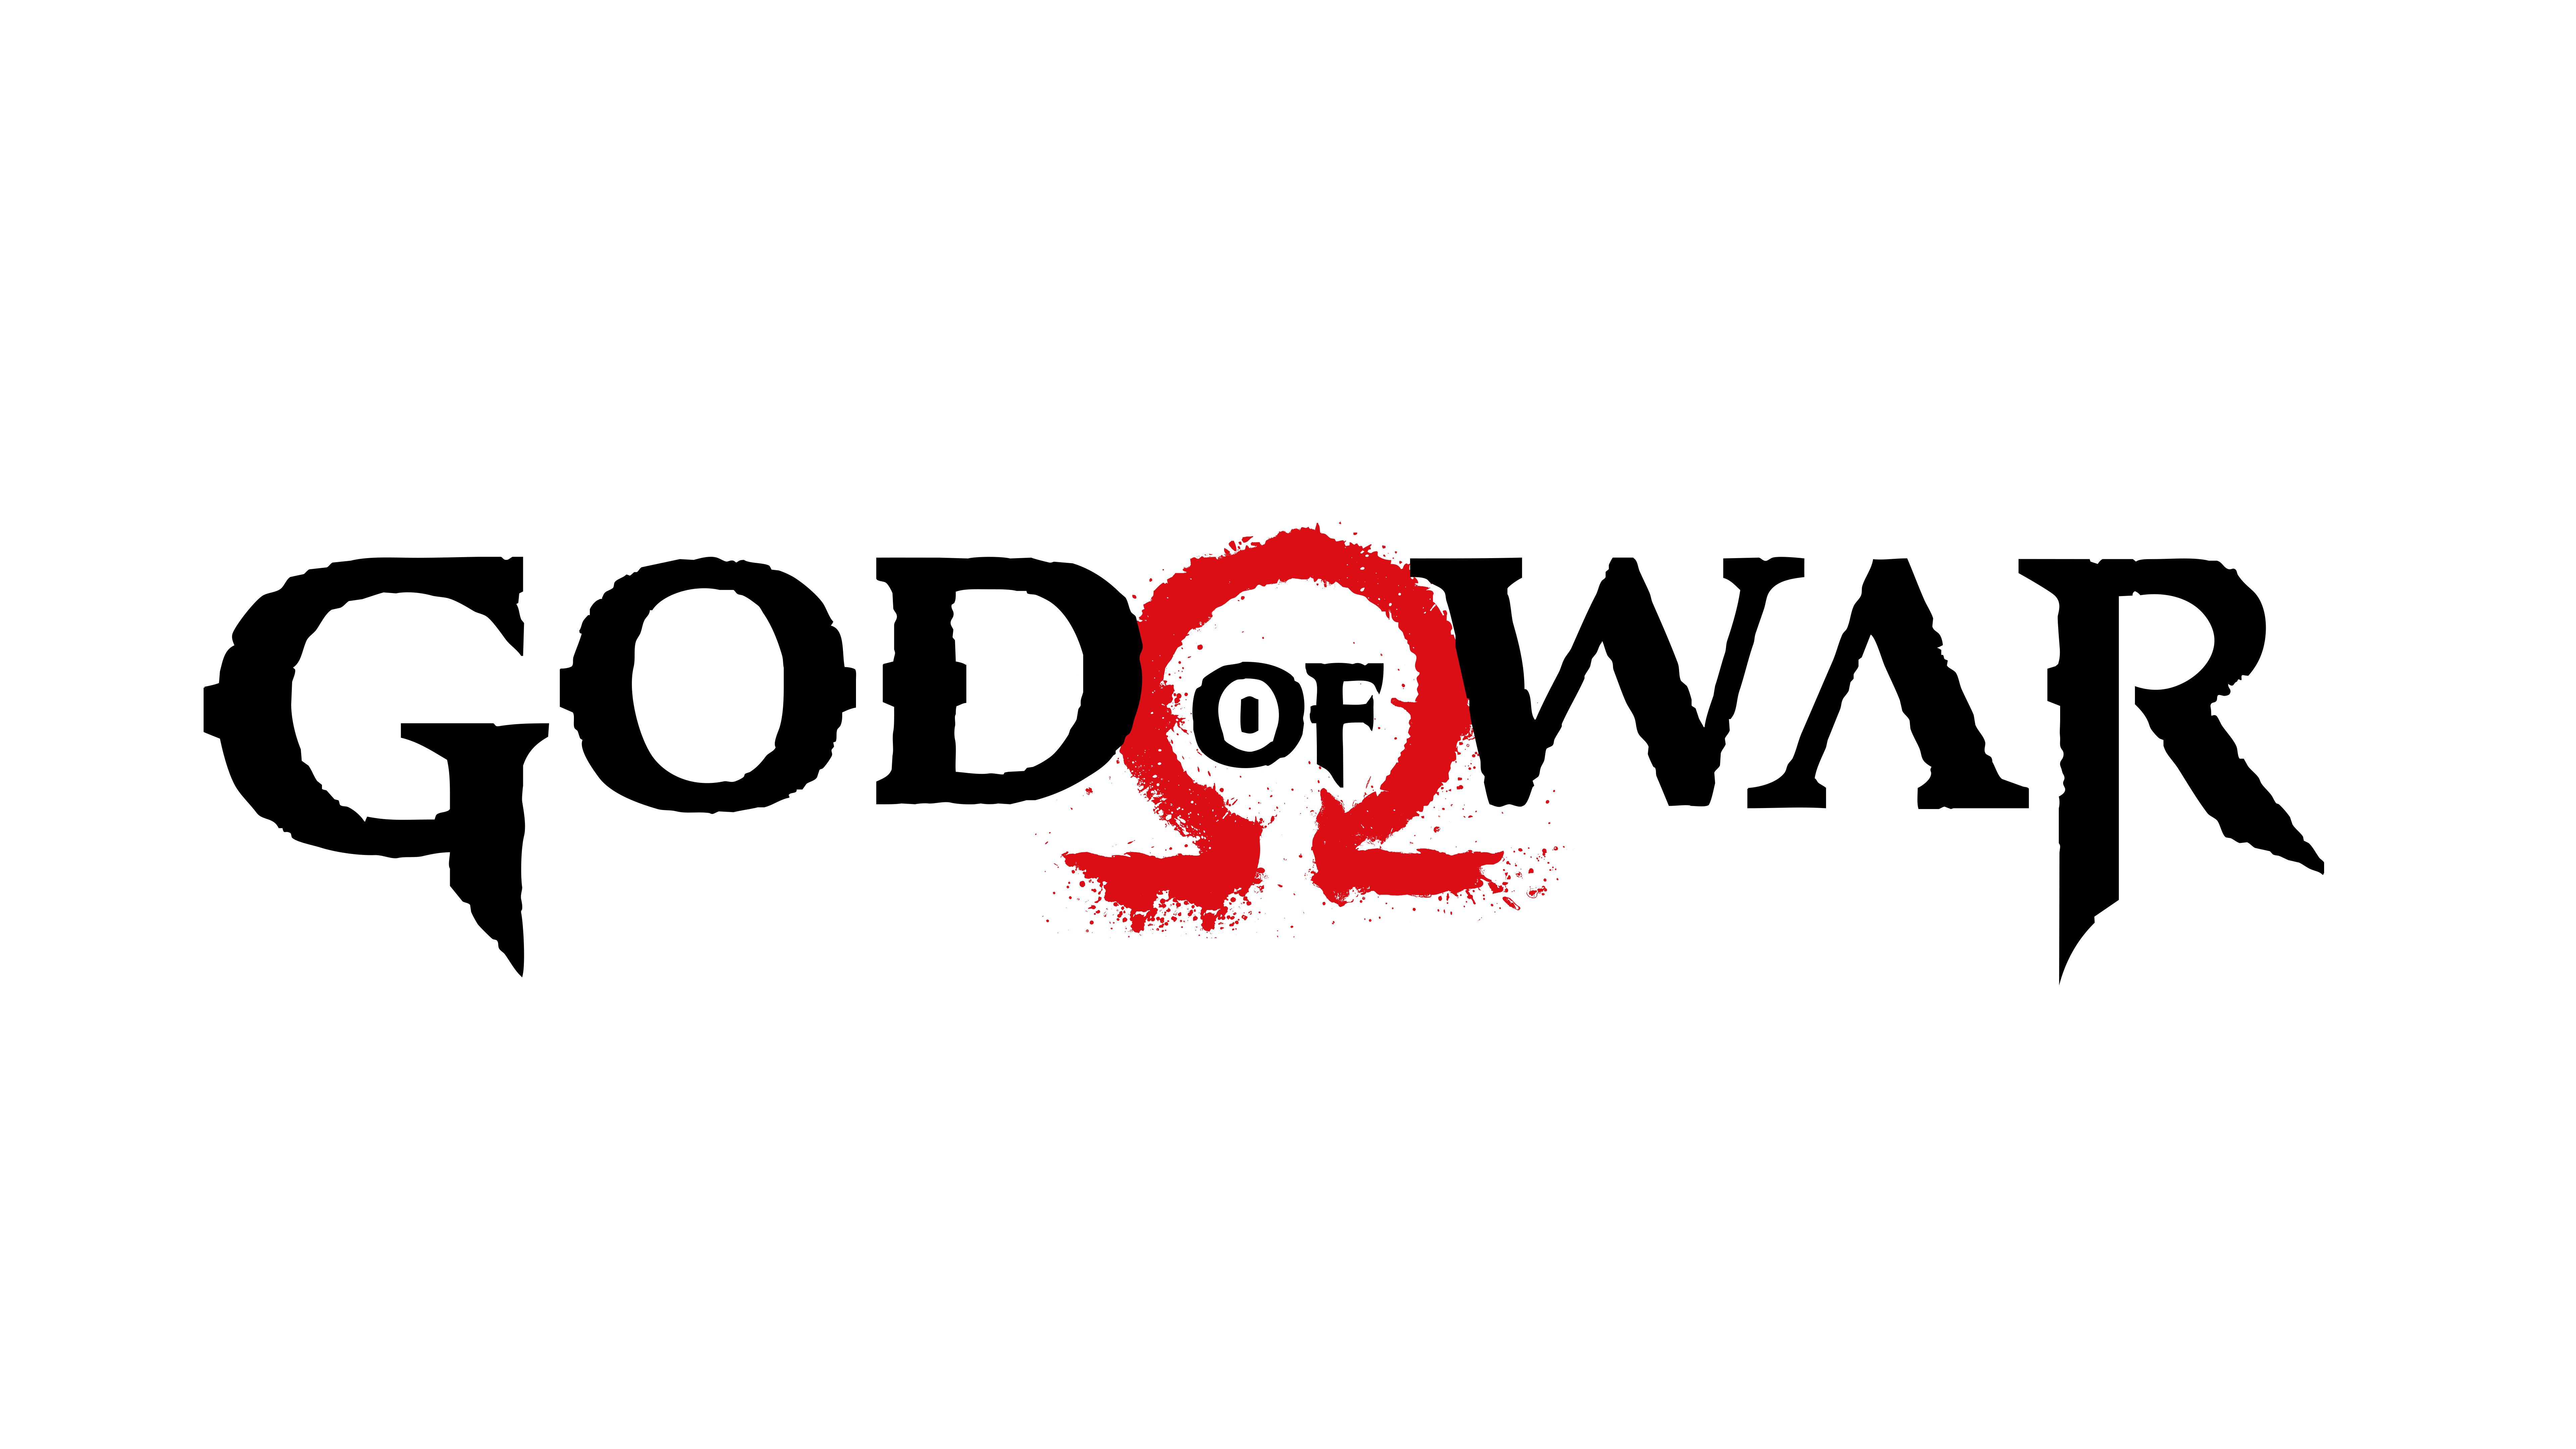 God Of War Logo PNG Image